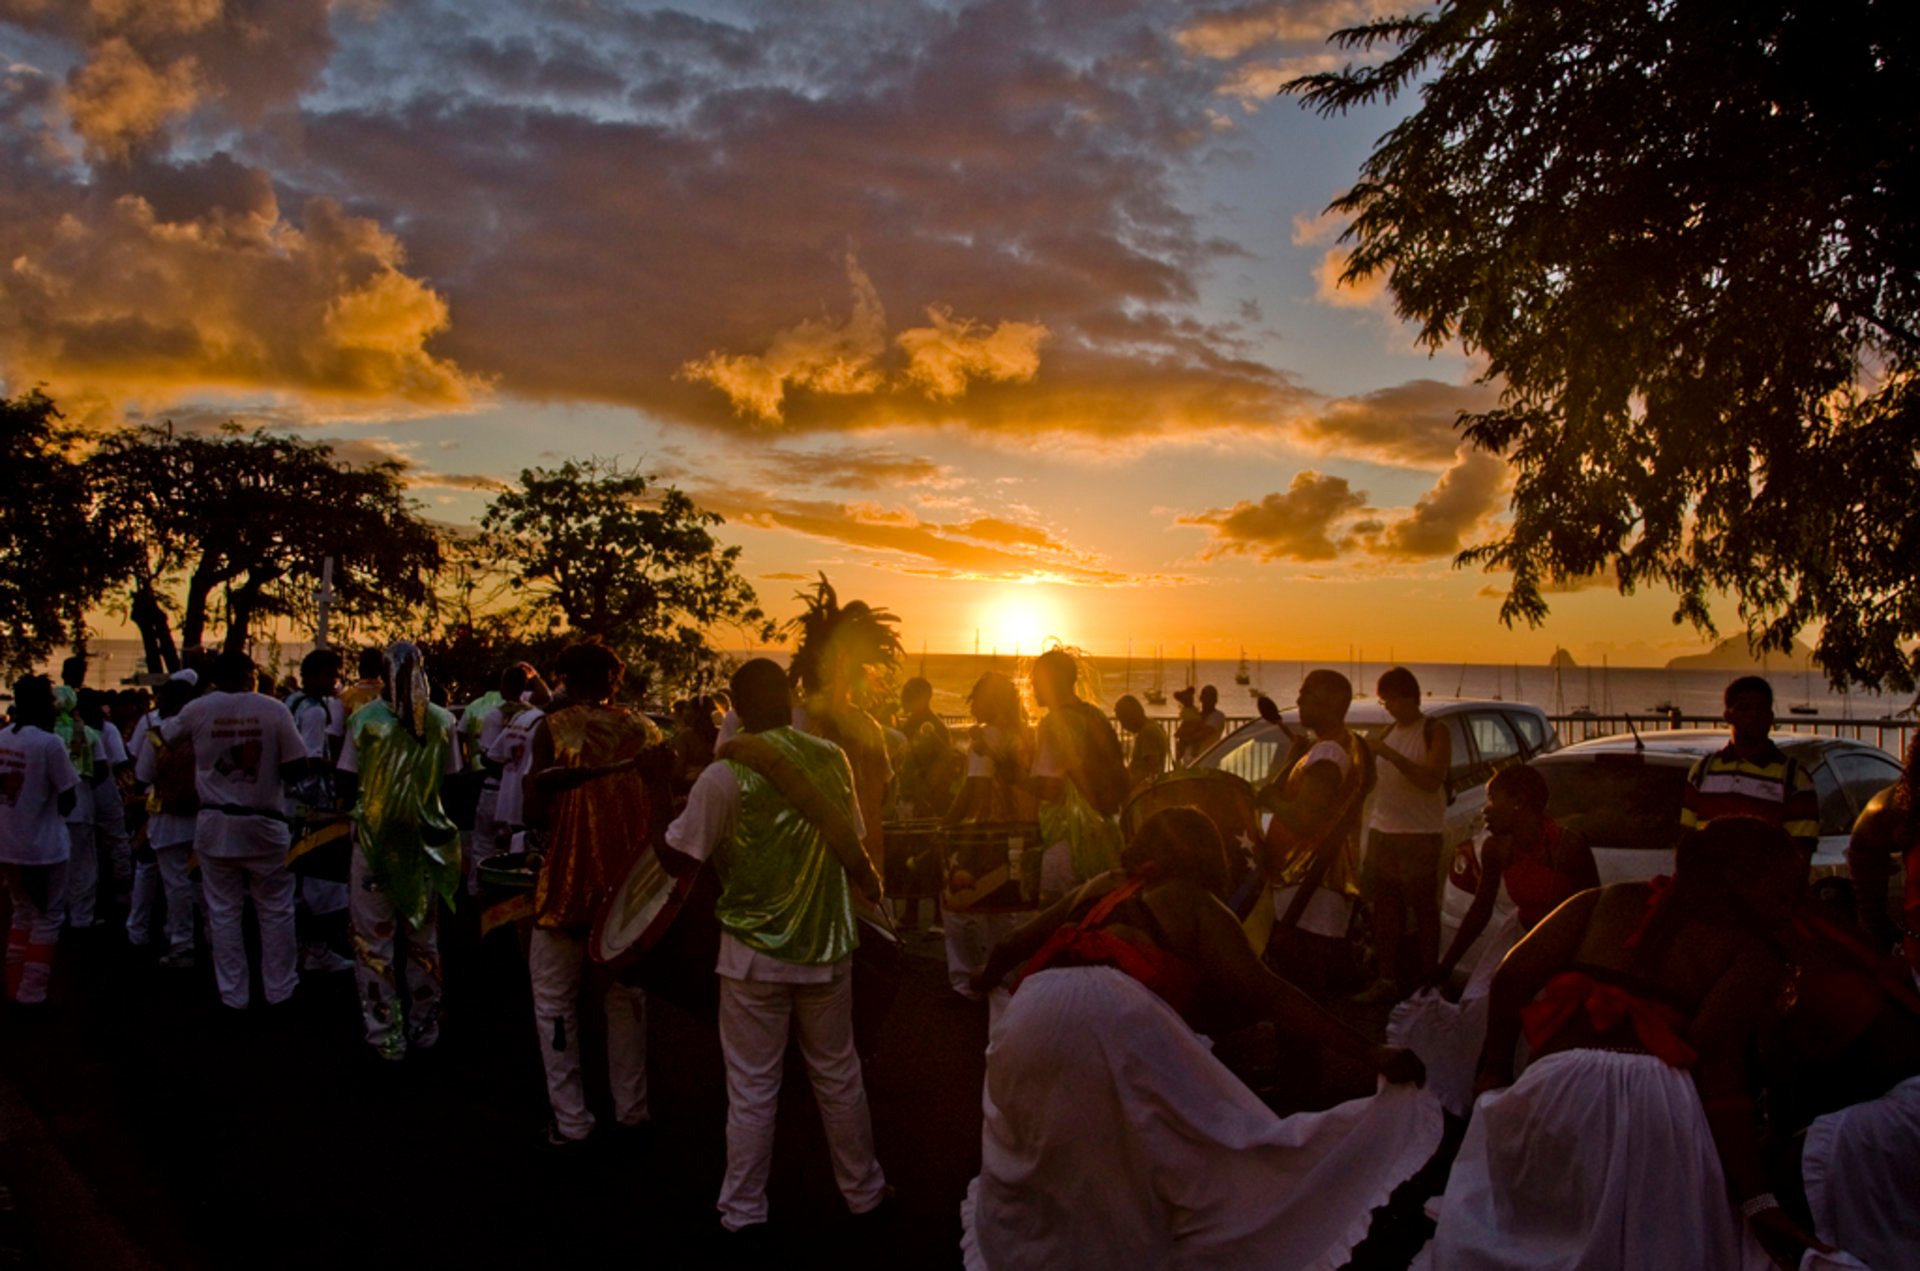 Carnaval de la Martinica